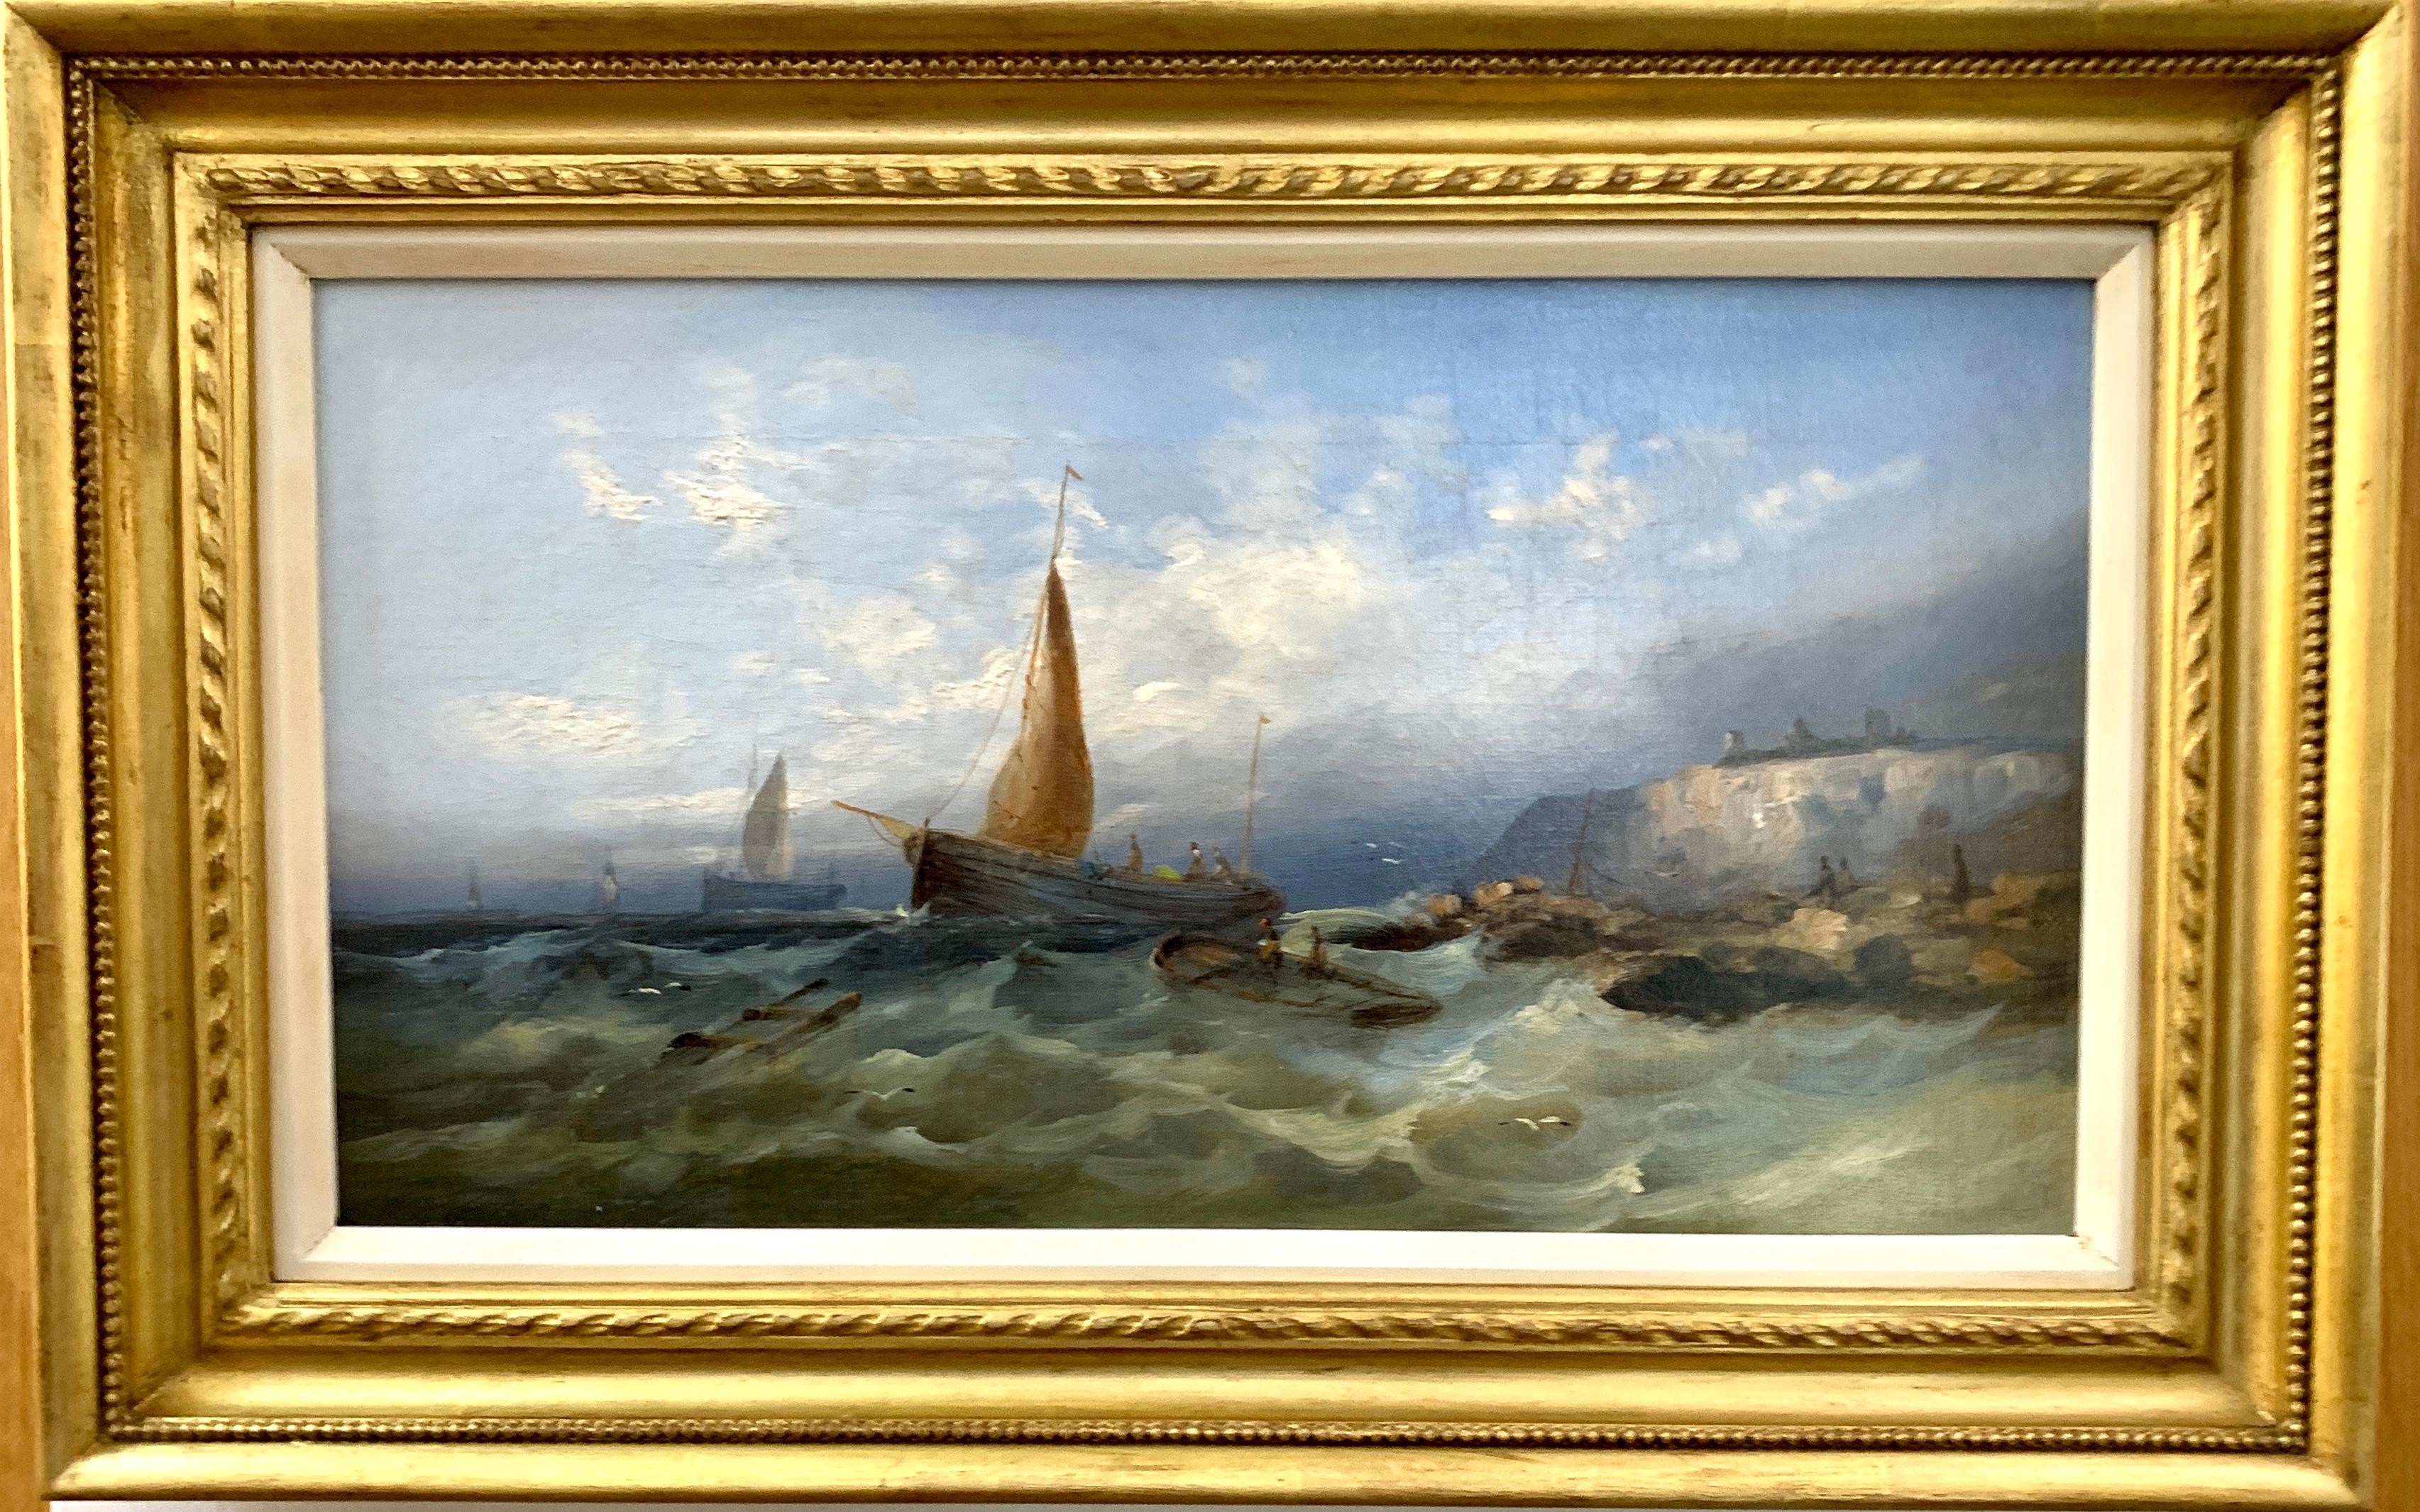 Landscape Painting William Henry Williamson - Anciennes récipients de pêche anglais du 19ème siècle dans la côte anglaise